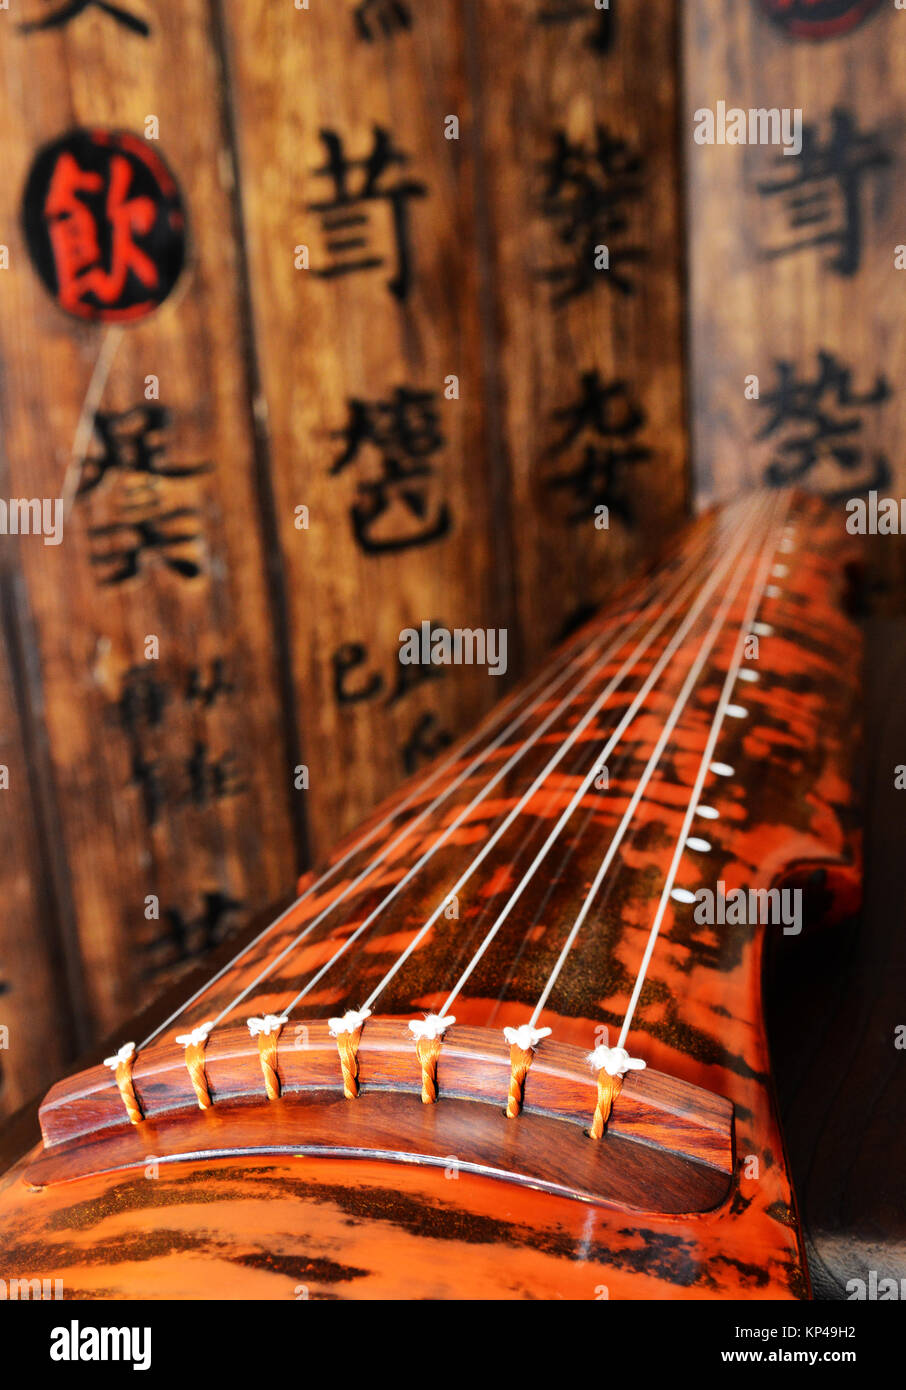 Guqin ist ein traditionelles chinesisches musikalisches Saiteninstrument  Stockfotografie - Alamy